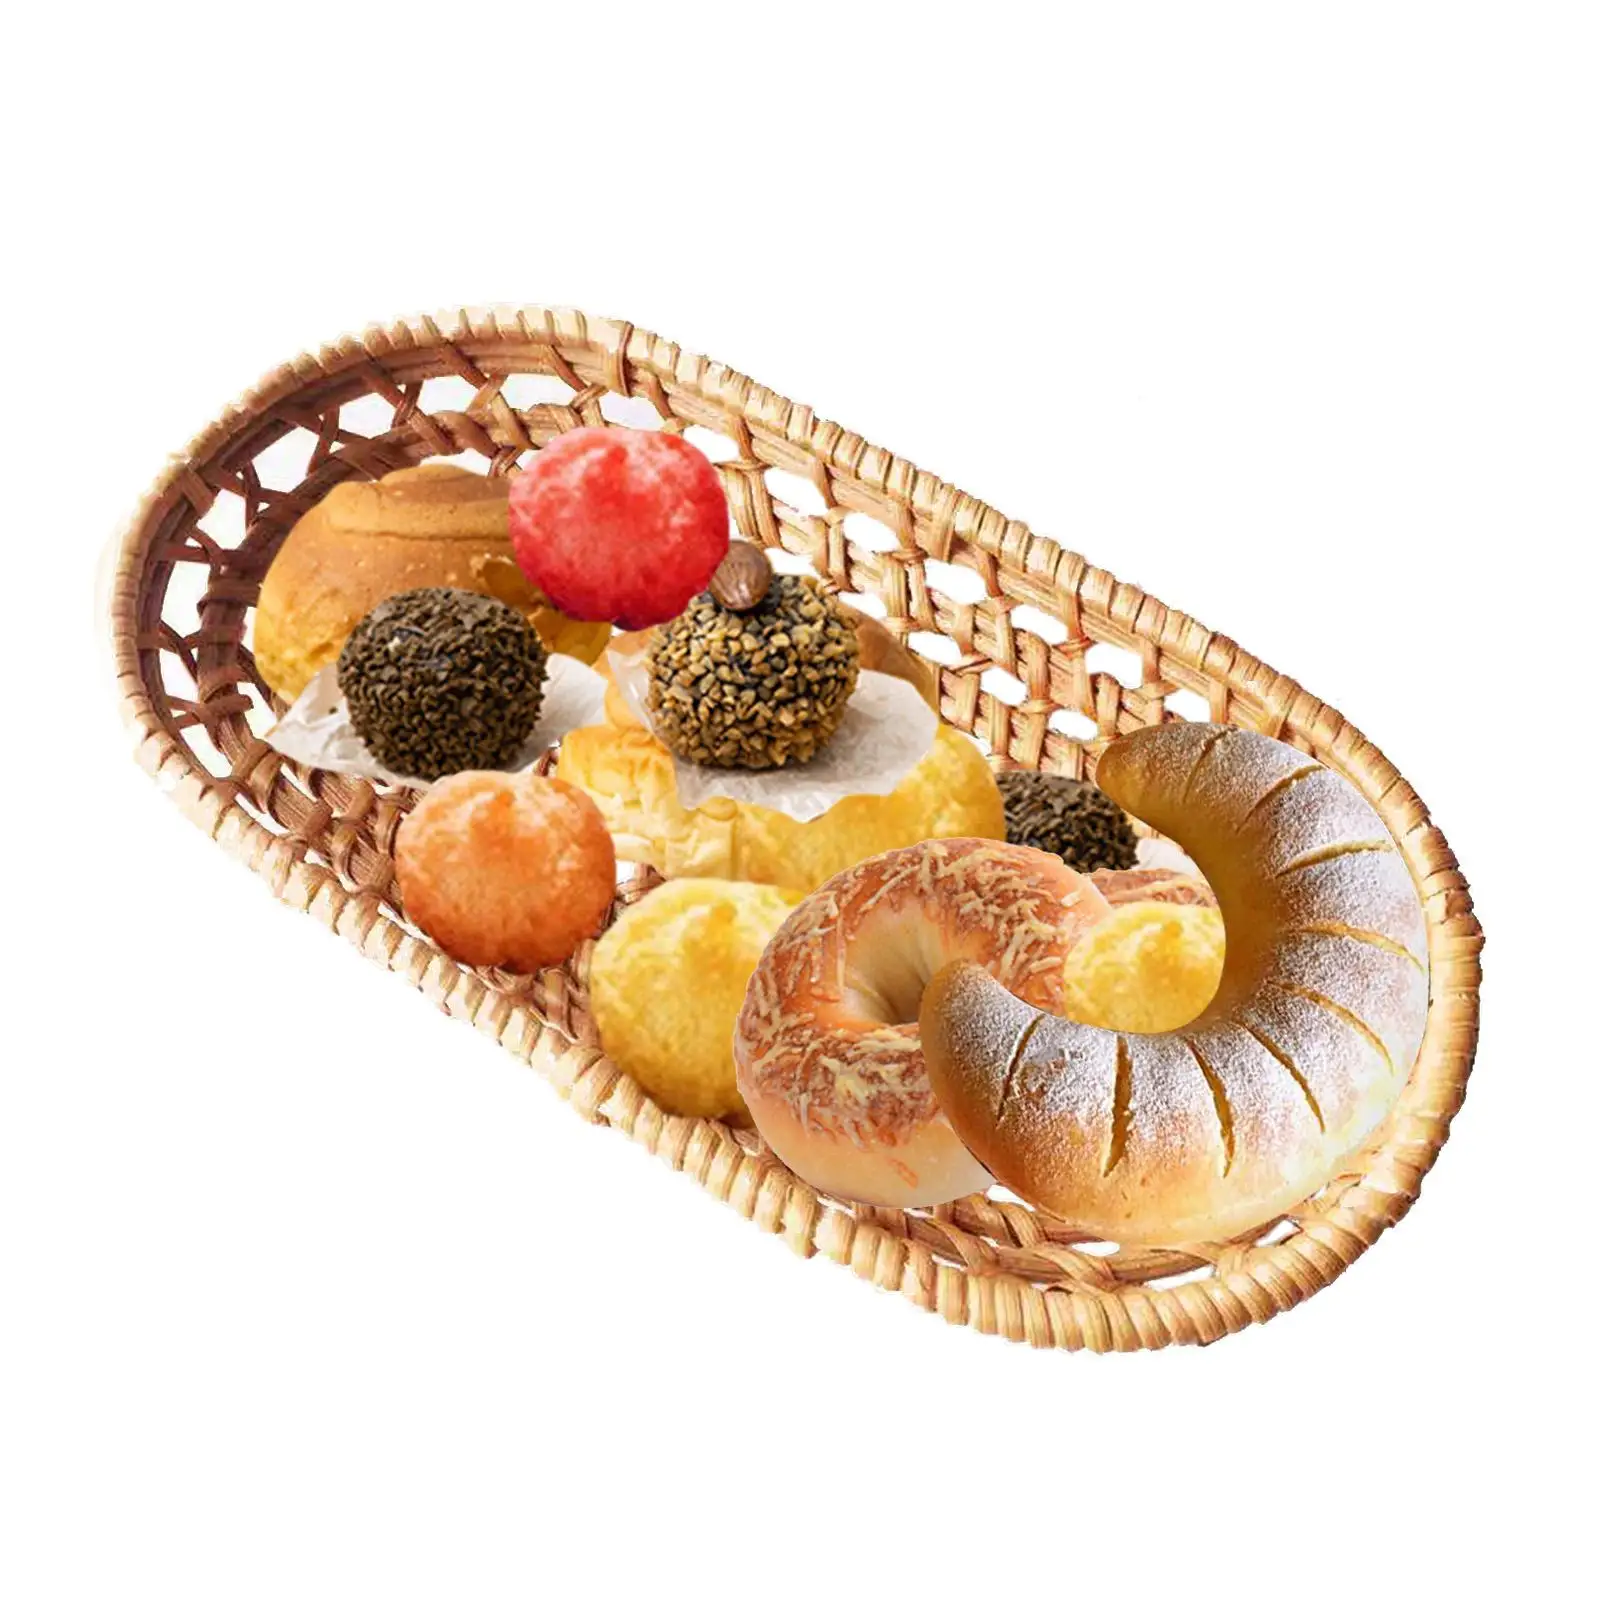 Wicker Oval Fruit Basket Hand Woven Rattan Fruit Baskets Decorative Fruit Trays